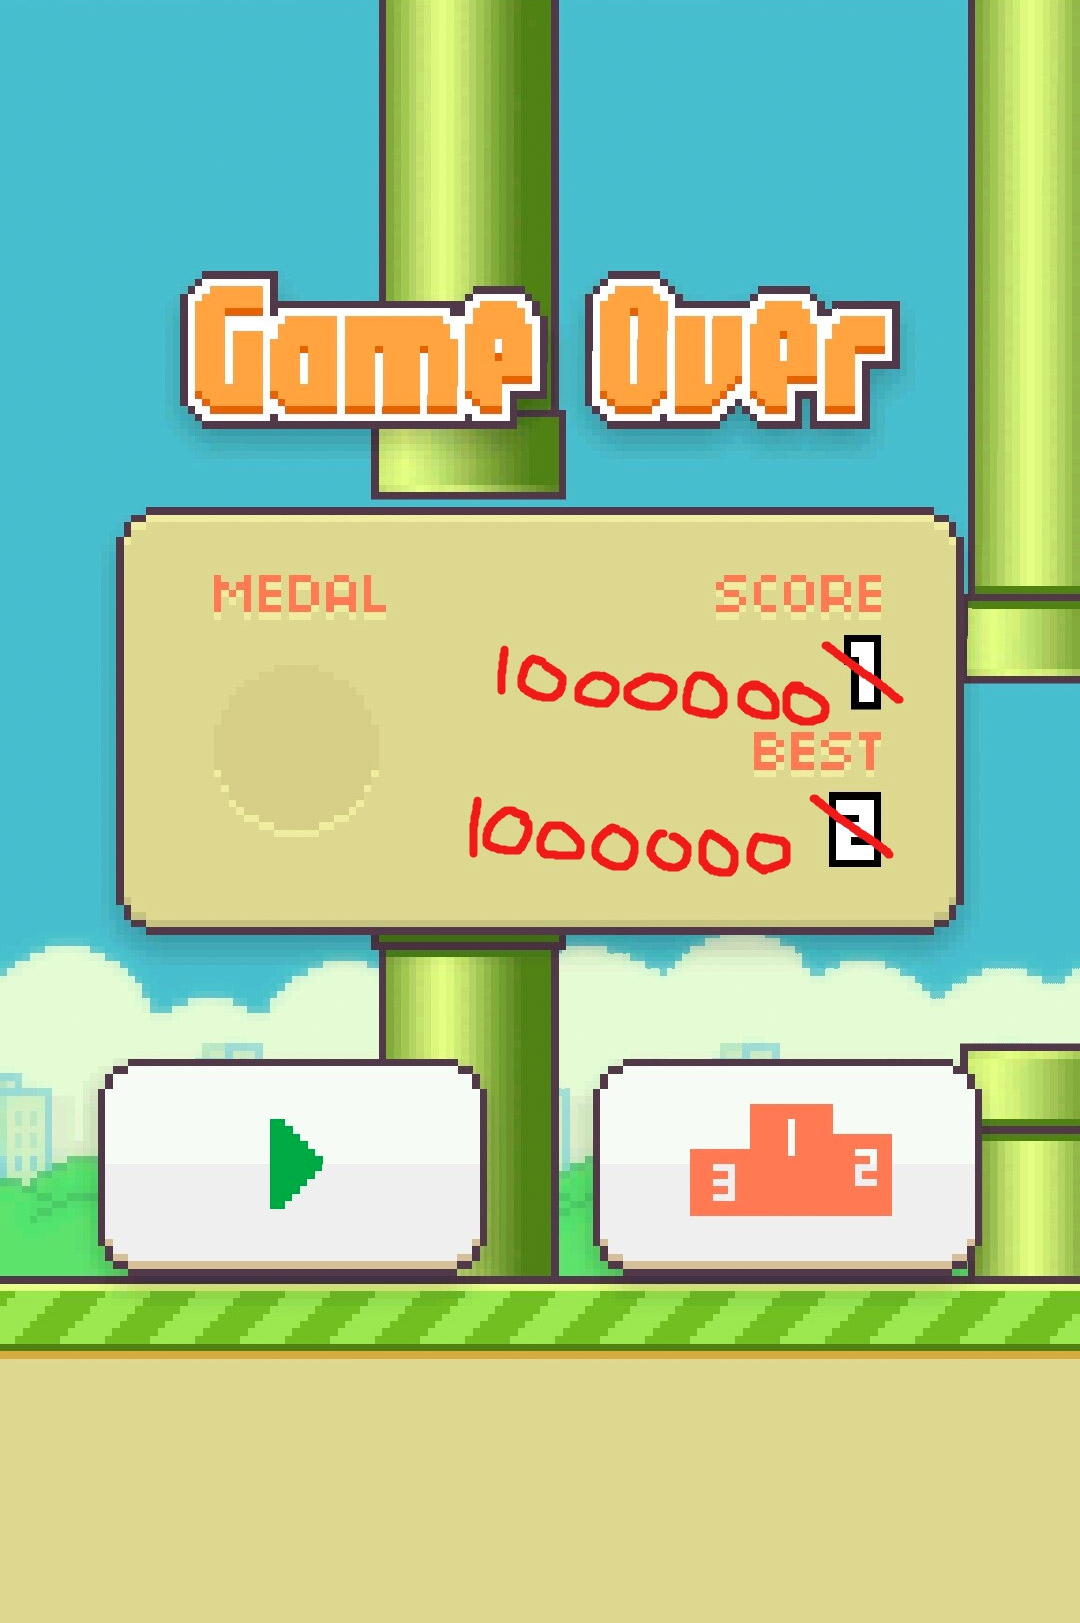 Record en Flappy Bird